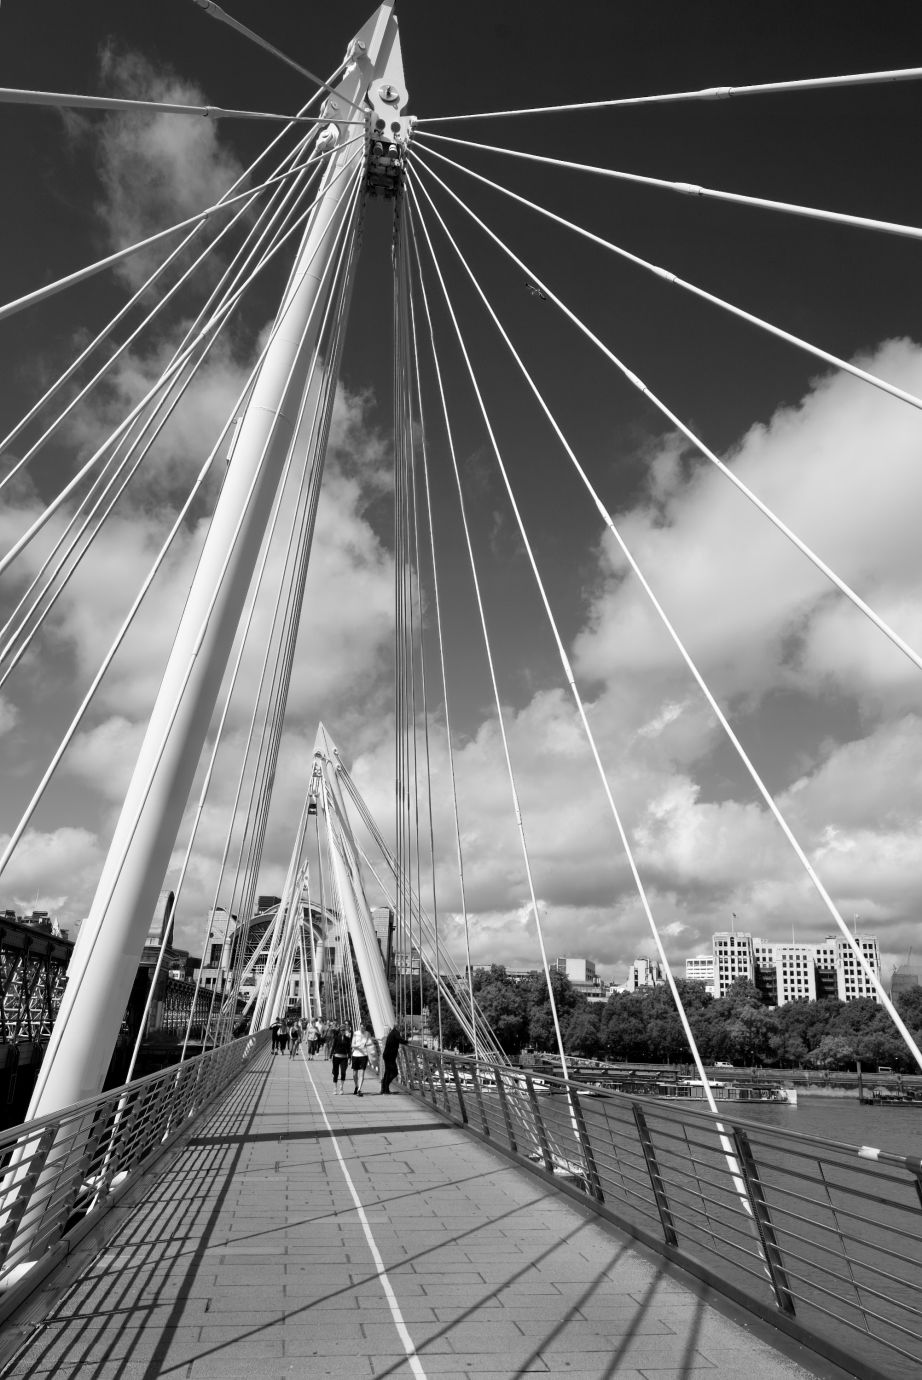 Golden-Jubilee-footbridge-London-monochrome-6806-15082021